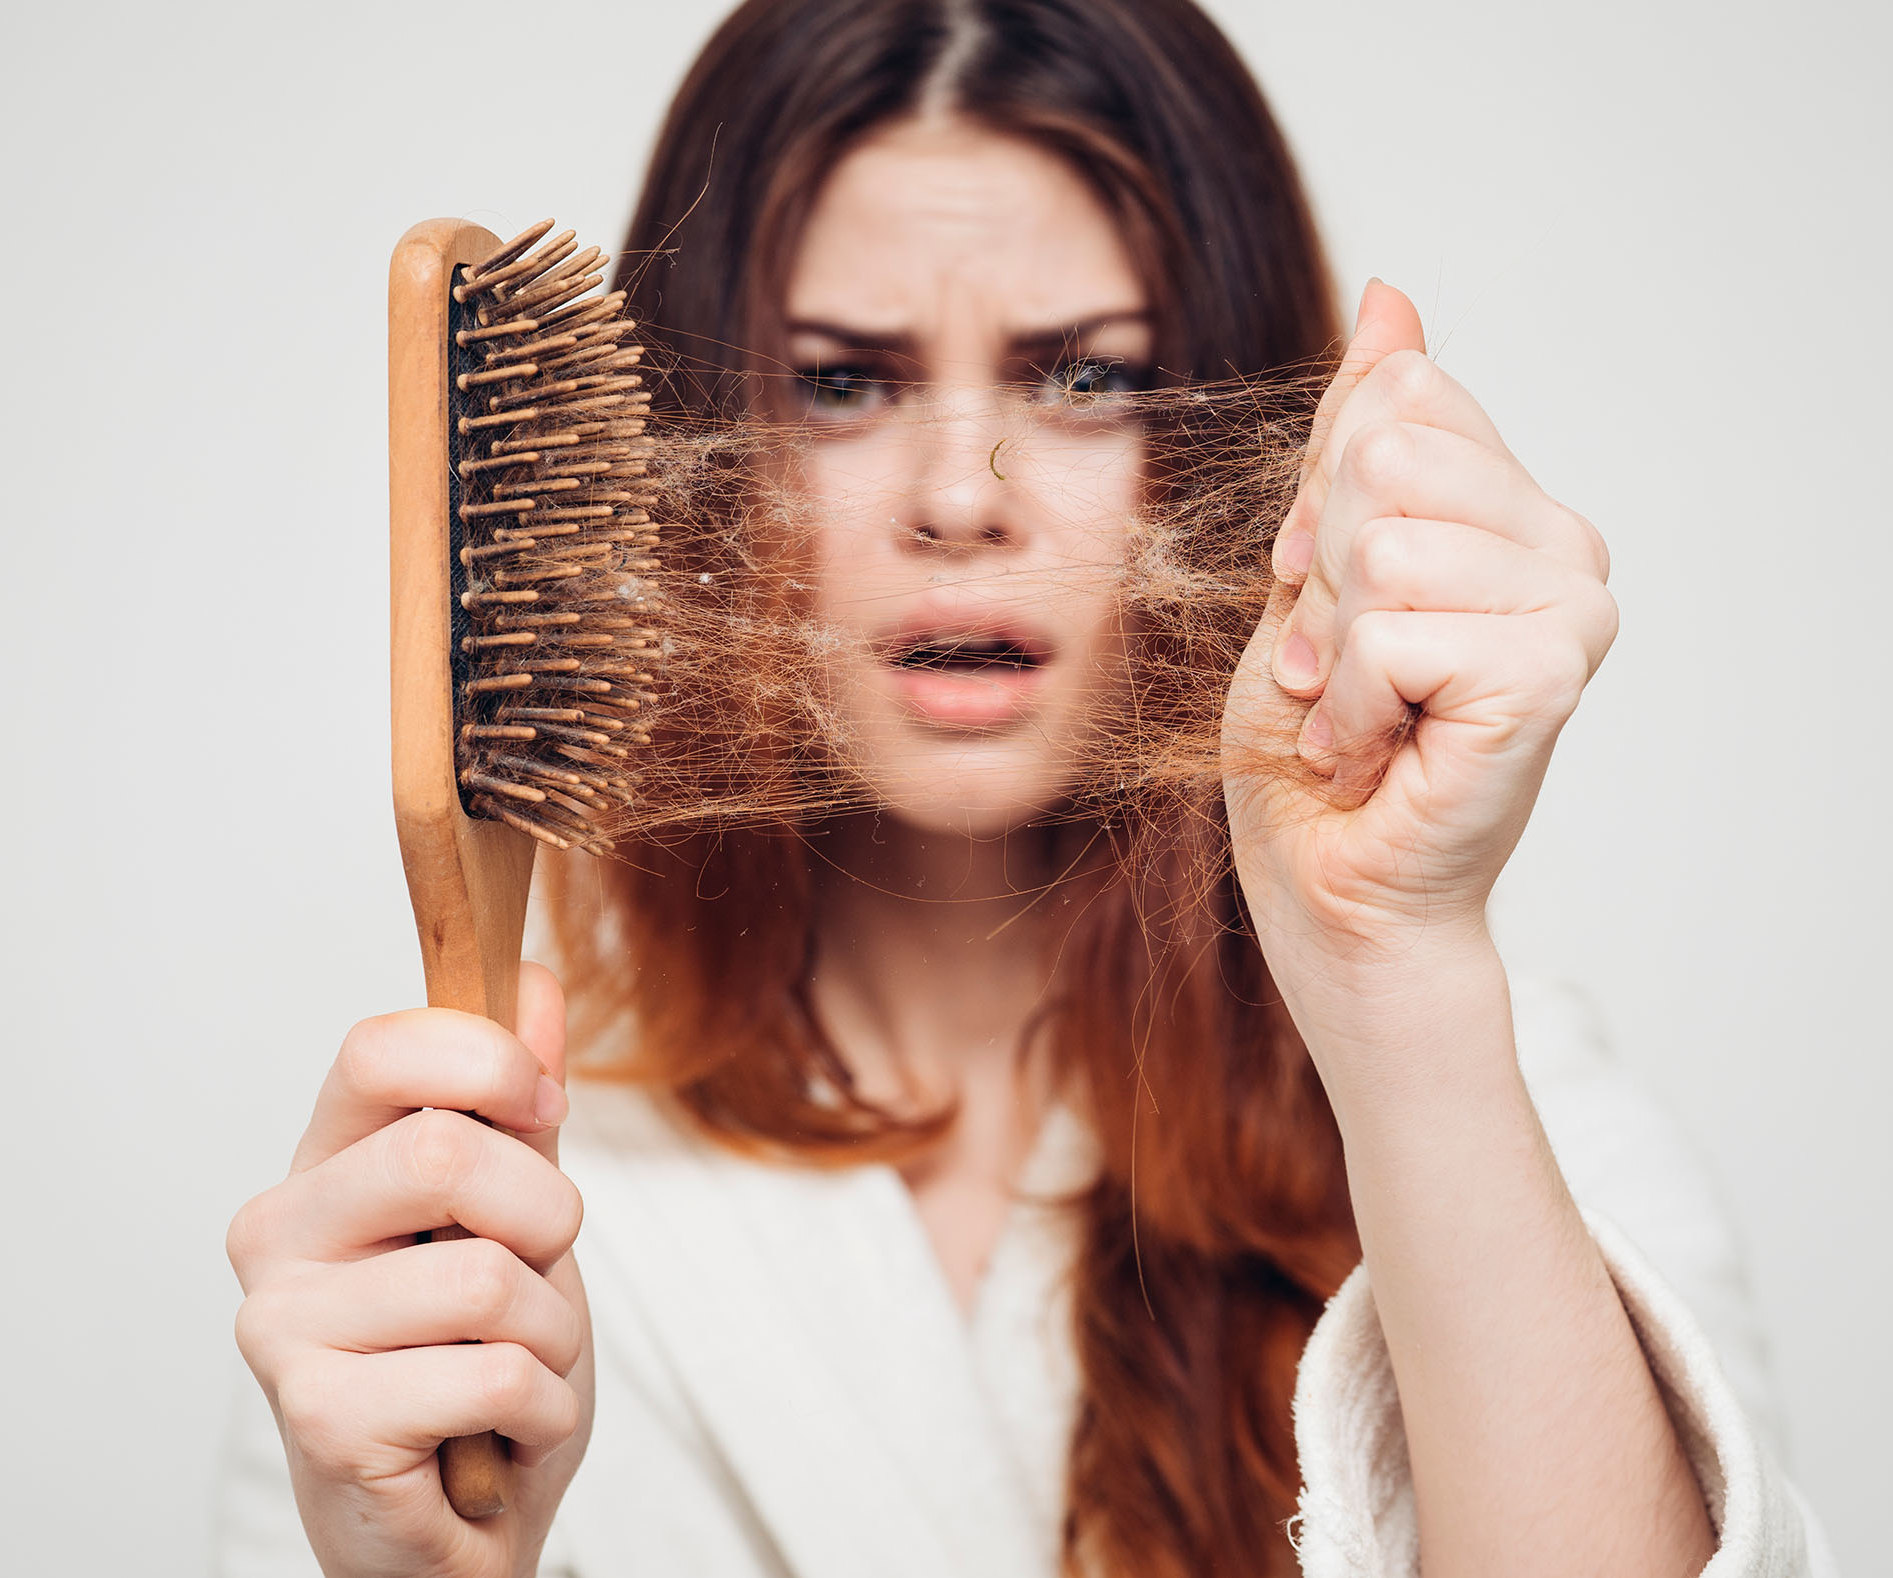 Почему выпадают волосы и как вернуть объем прическе